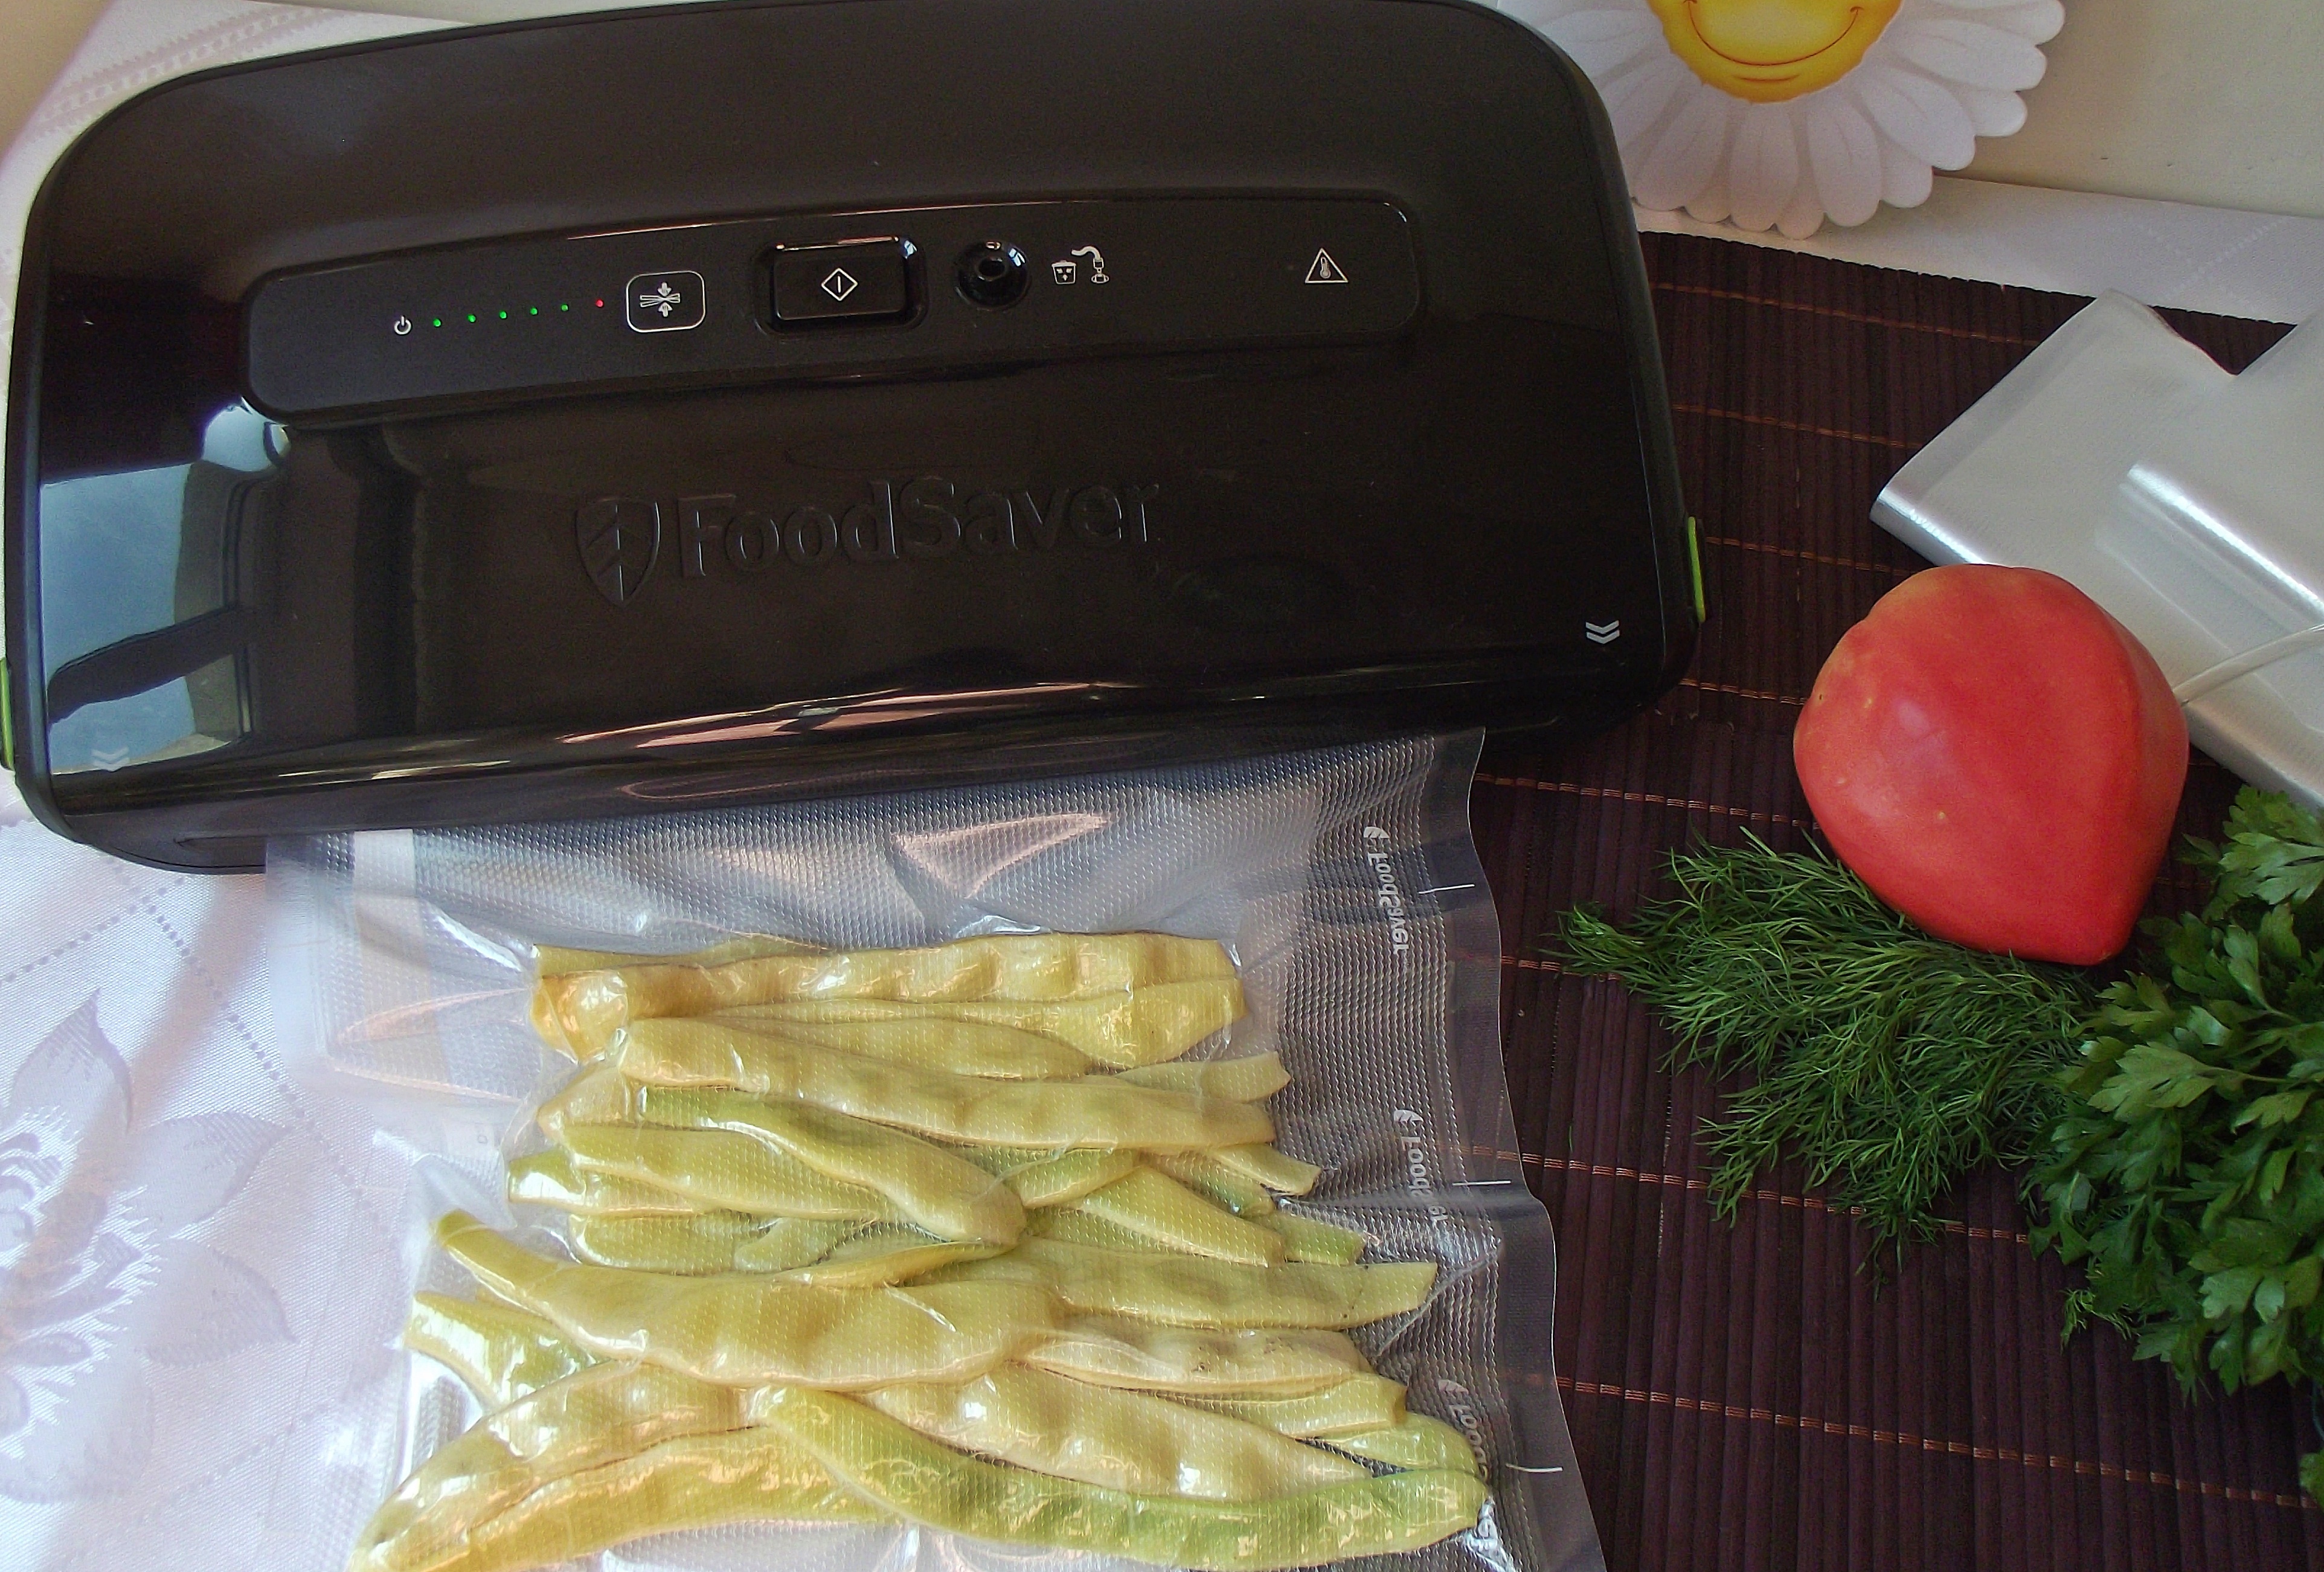 Cum pastram legumele proaspete cu ajutorul aparatului de vidat FoodSaver